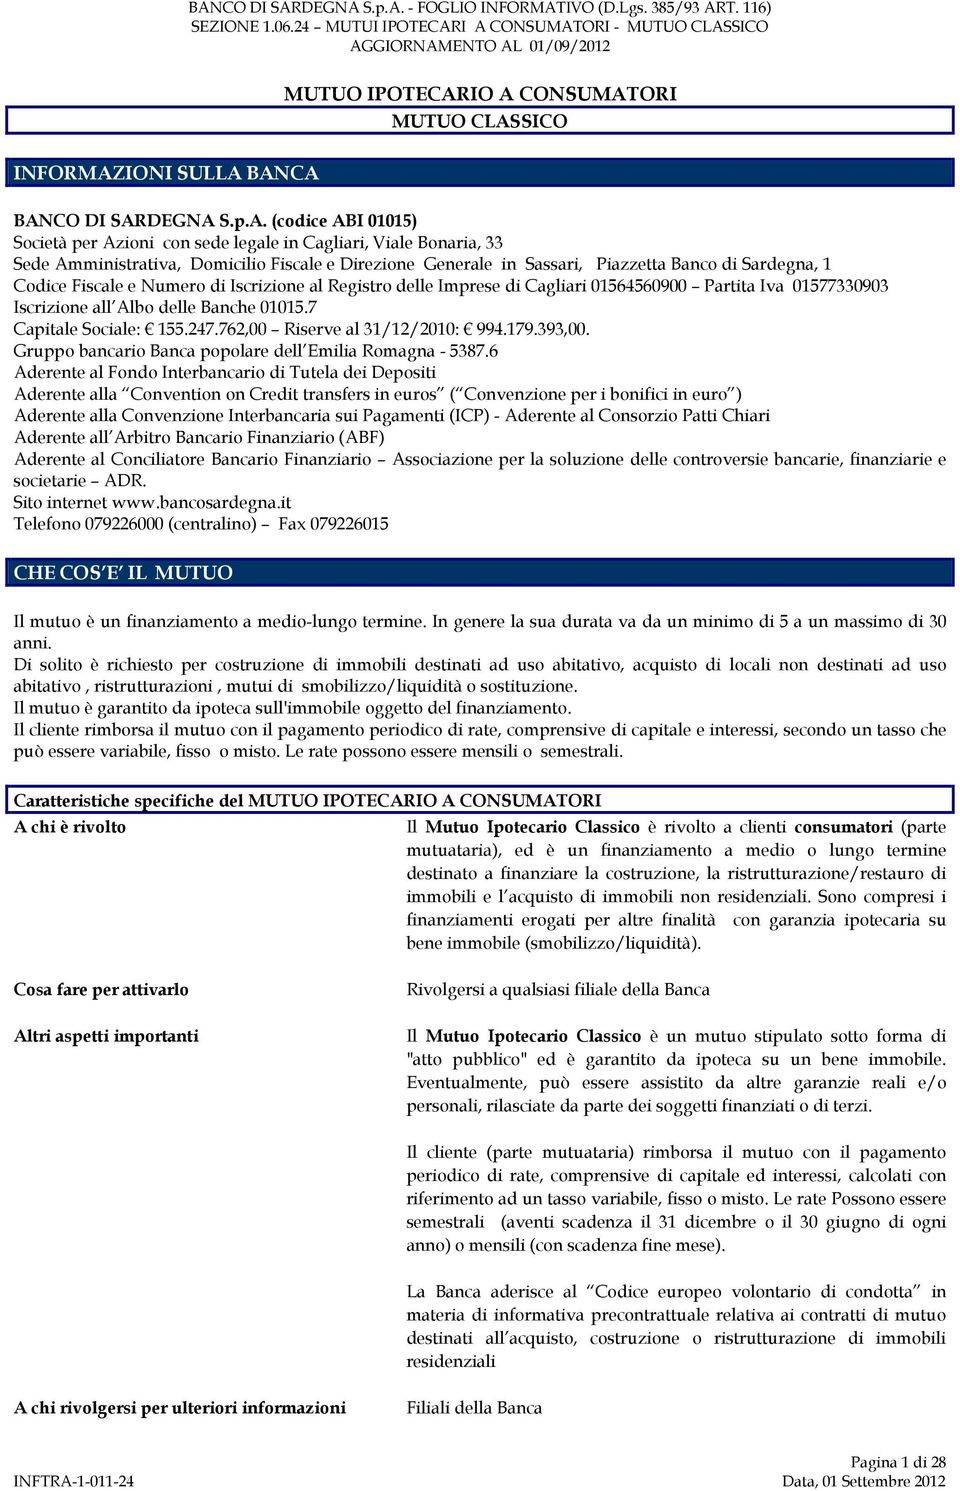 Fiscale e Direzione Generale in Sassari, Piazzetta Banco di Sardegna, 1 Codice Fiscale e Numero di Iscrizione al Registro delle Imprese di Cagliari 01564560900 Partita Iva 01577330903 Iscrizione all